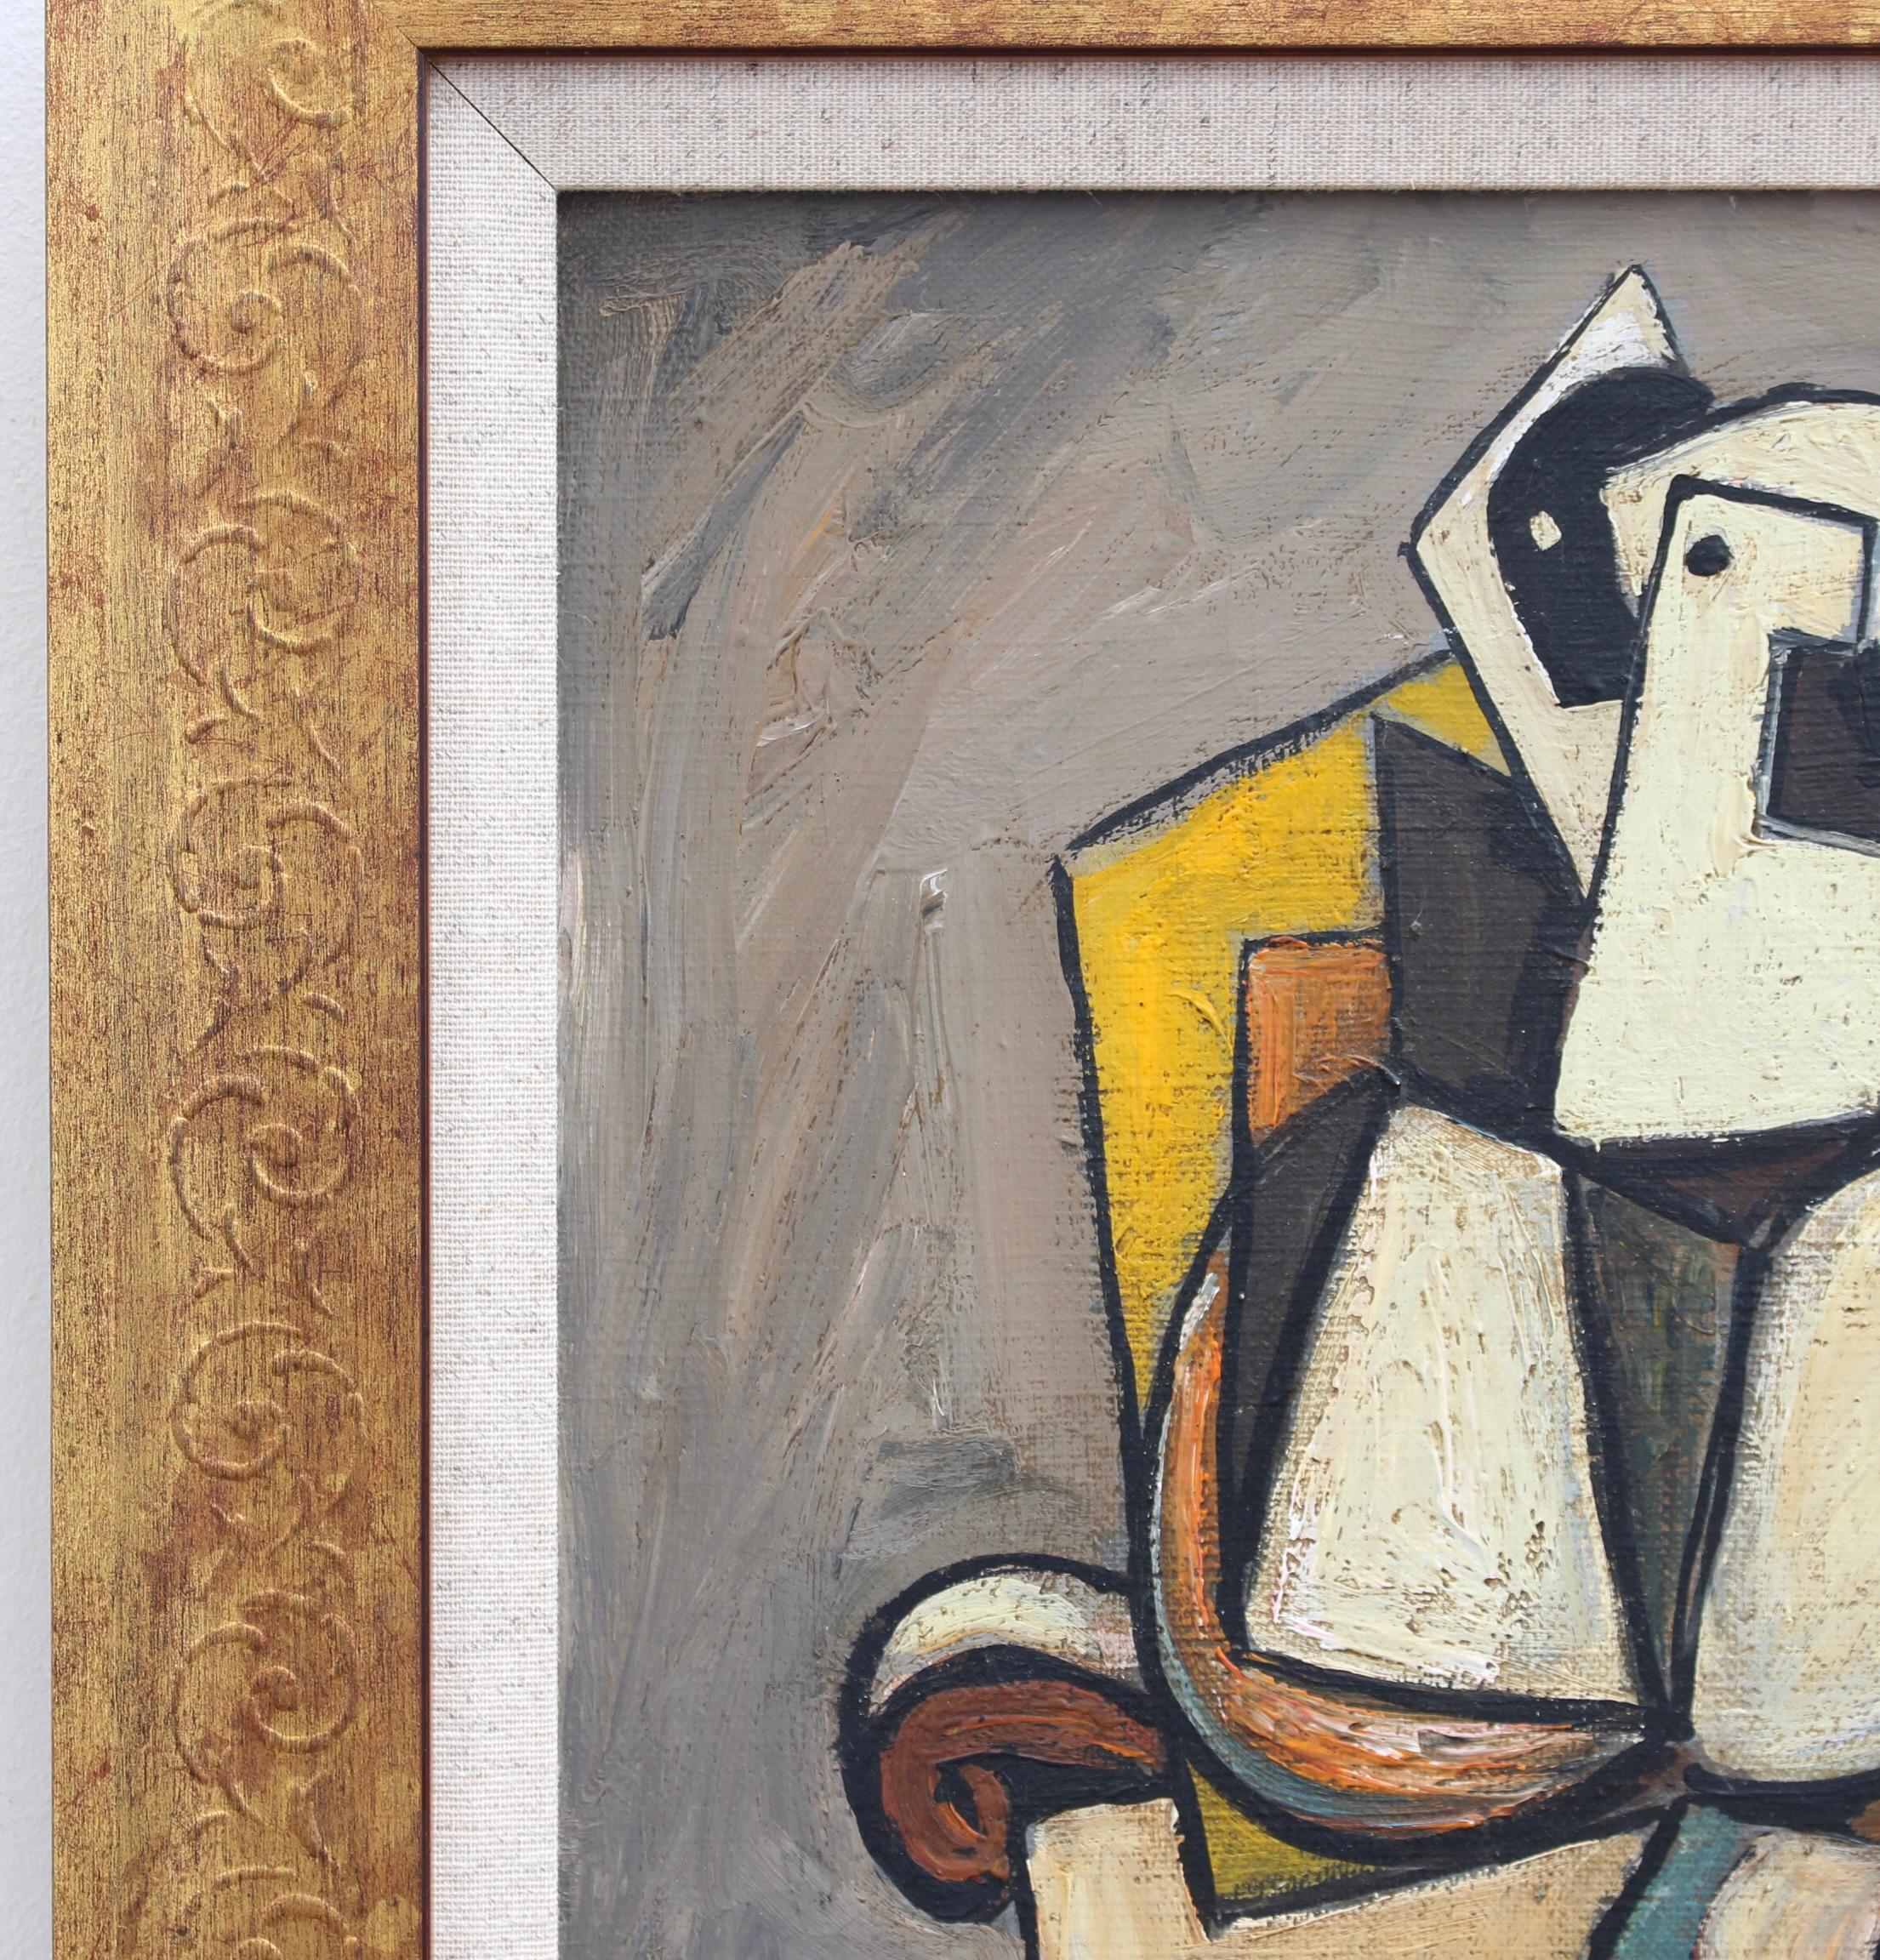 Portrait d'un homme assis, huile sur toile, école allemande (vers les années 1970). Portrait richement coloré d'un personnage peint dans le style des expressionnistes / cubistes de l'époque. Les teintes sensuelles - brun, jaune, orange, beige et une